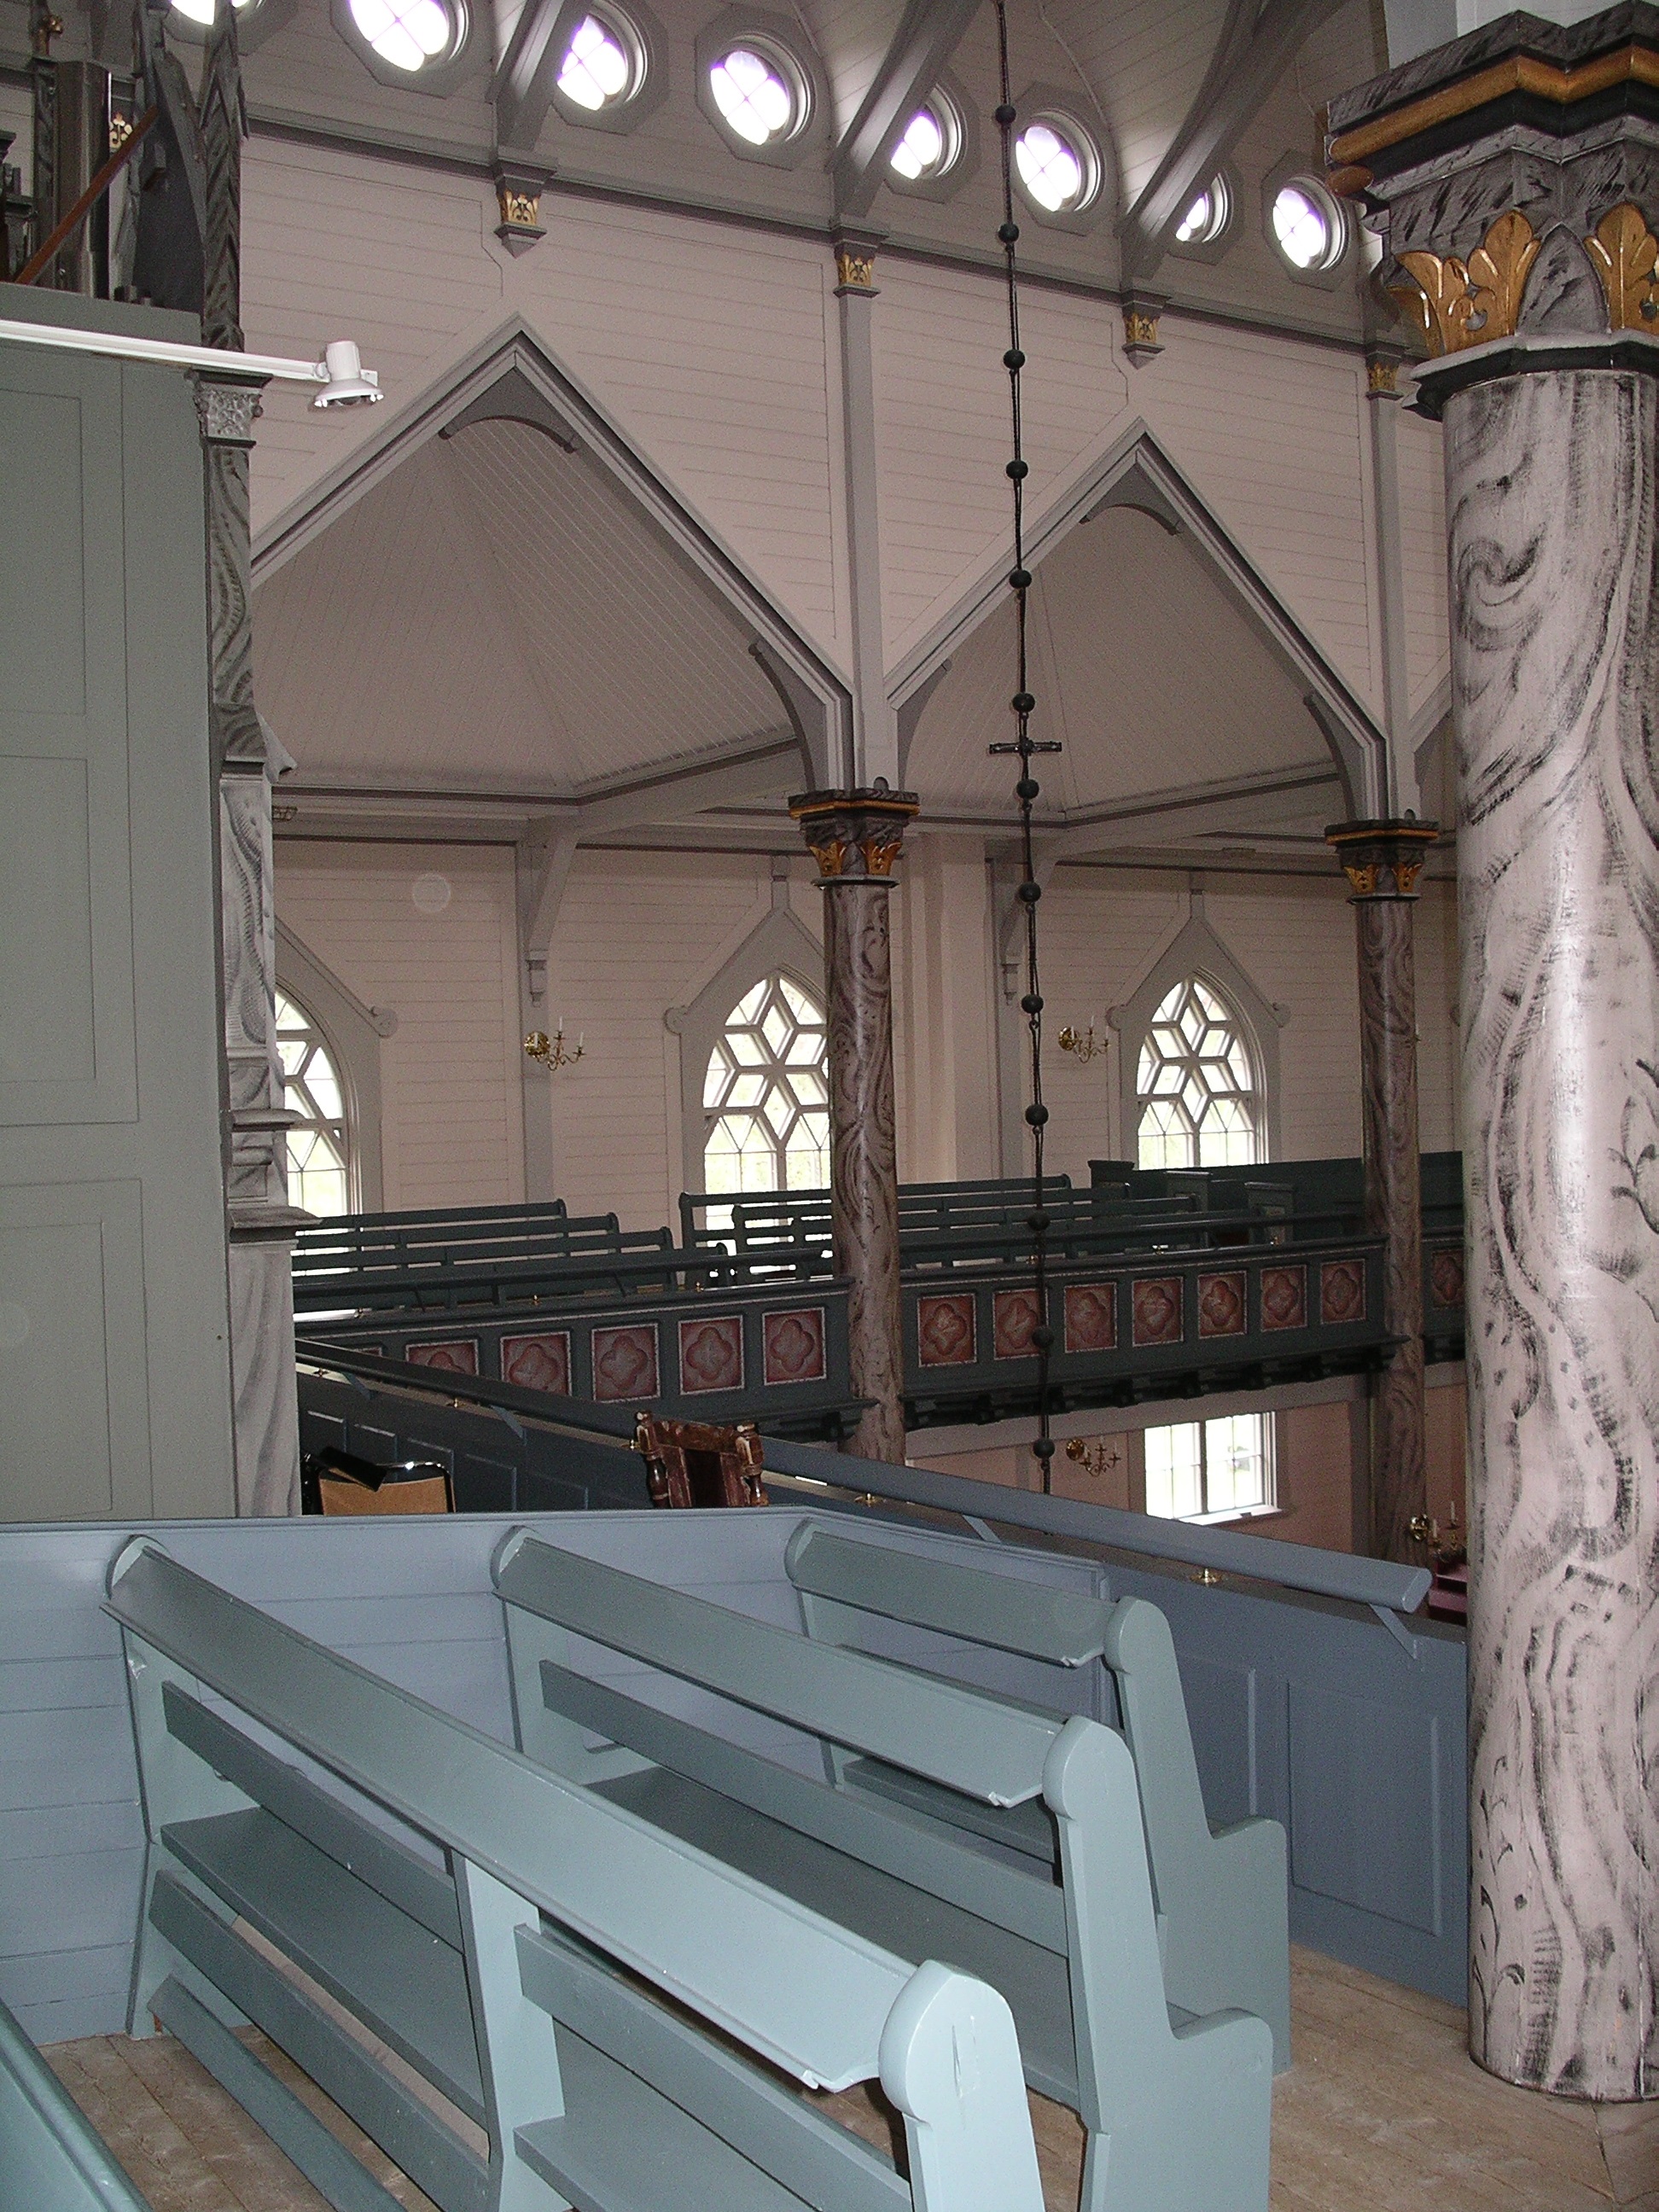 Duveds kyrka, interiör, kyrkorummet, sidoläktaren.

Bilderna är tagna av Martin Lagergren & Emelie Petersson, bebyggelseantikvarier vid Jämtlands läns museum, i samband med inventeringen, 2004-2005.